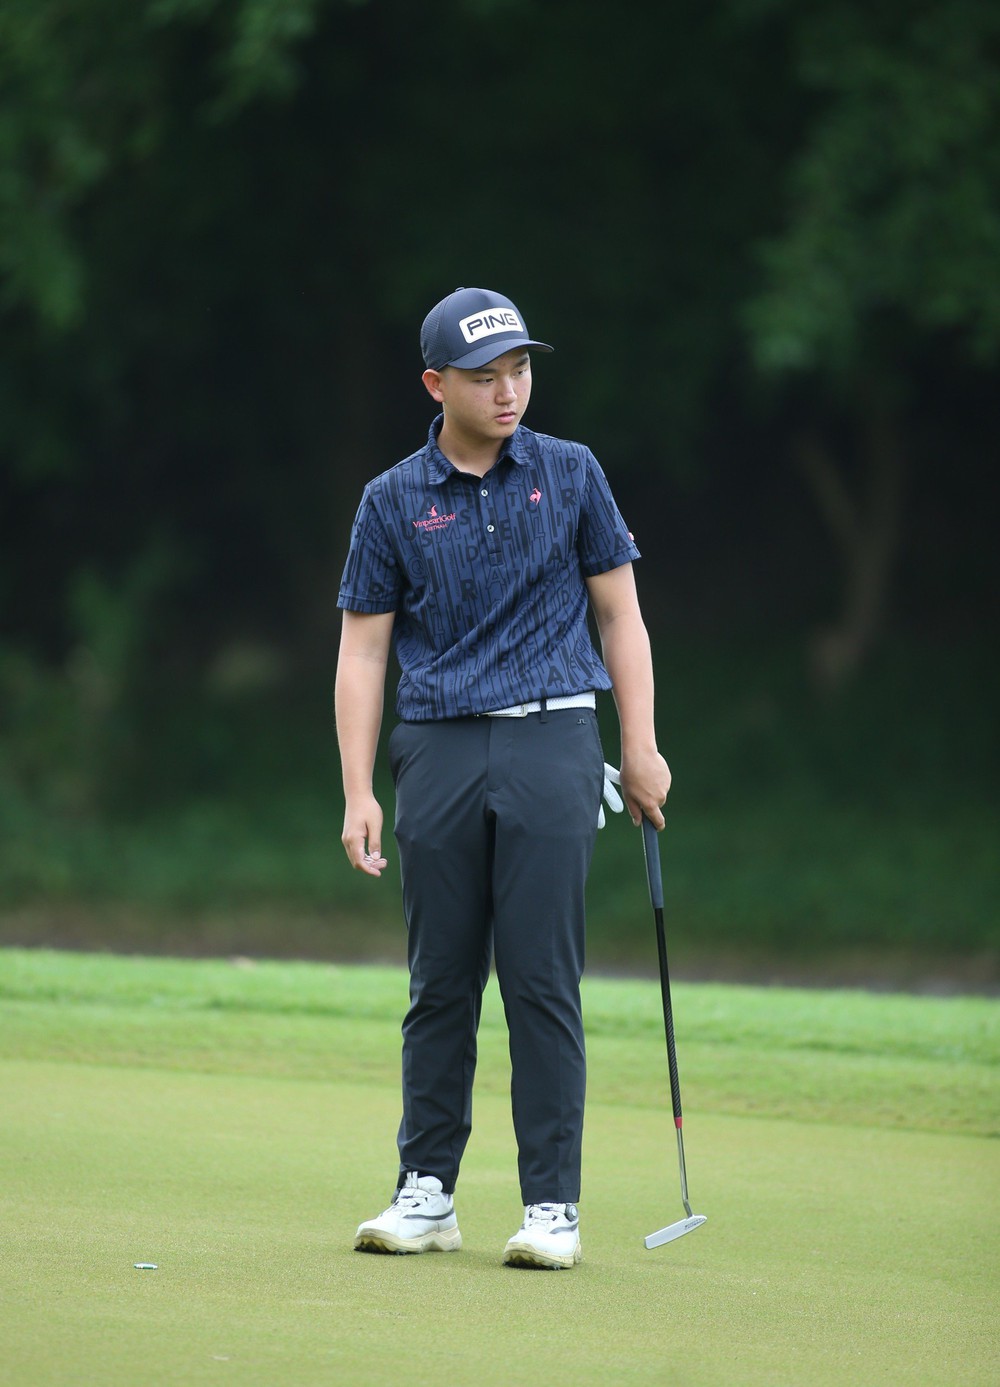 Nguyễn Anh Minh kèm chặt huyền thoại golf thế giới Michael Campbell - Ảnh 1.